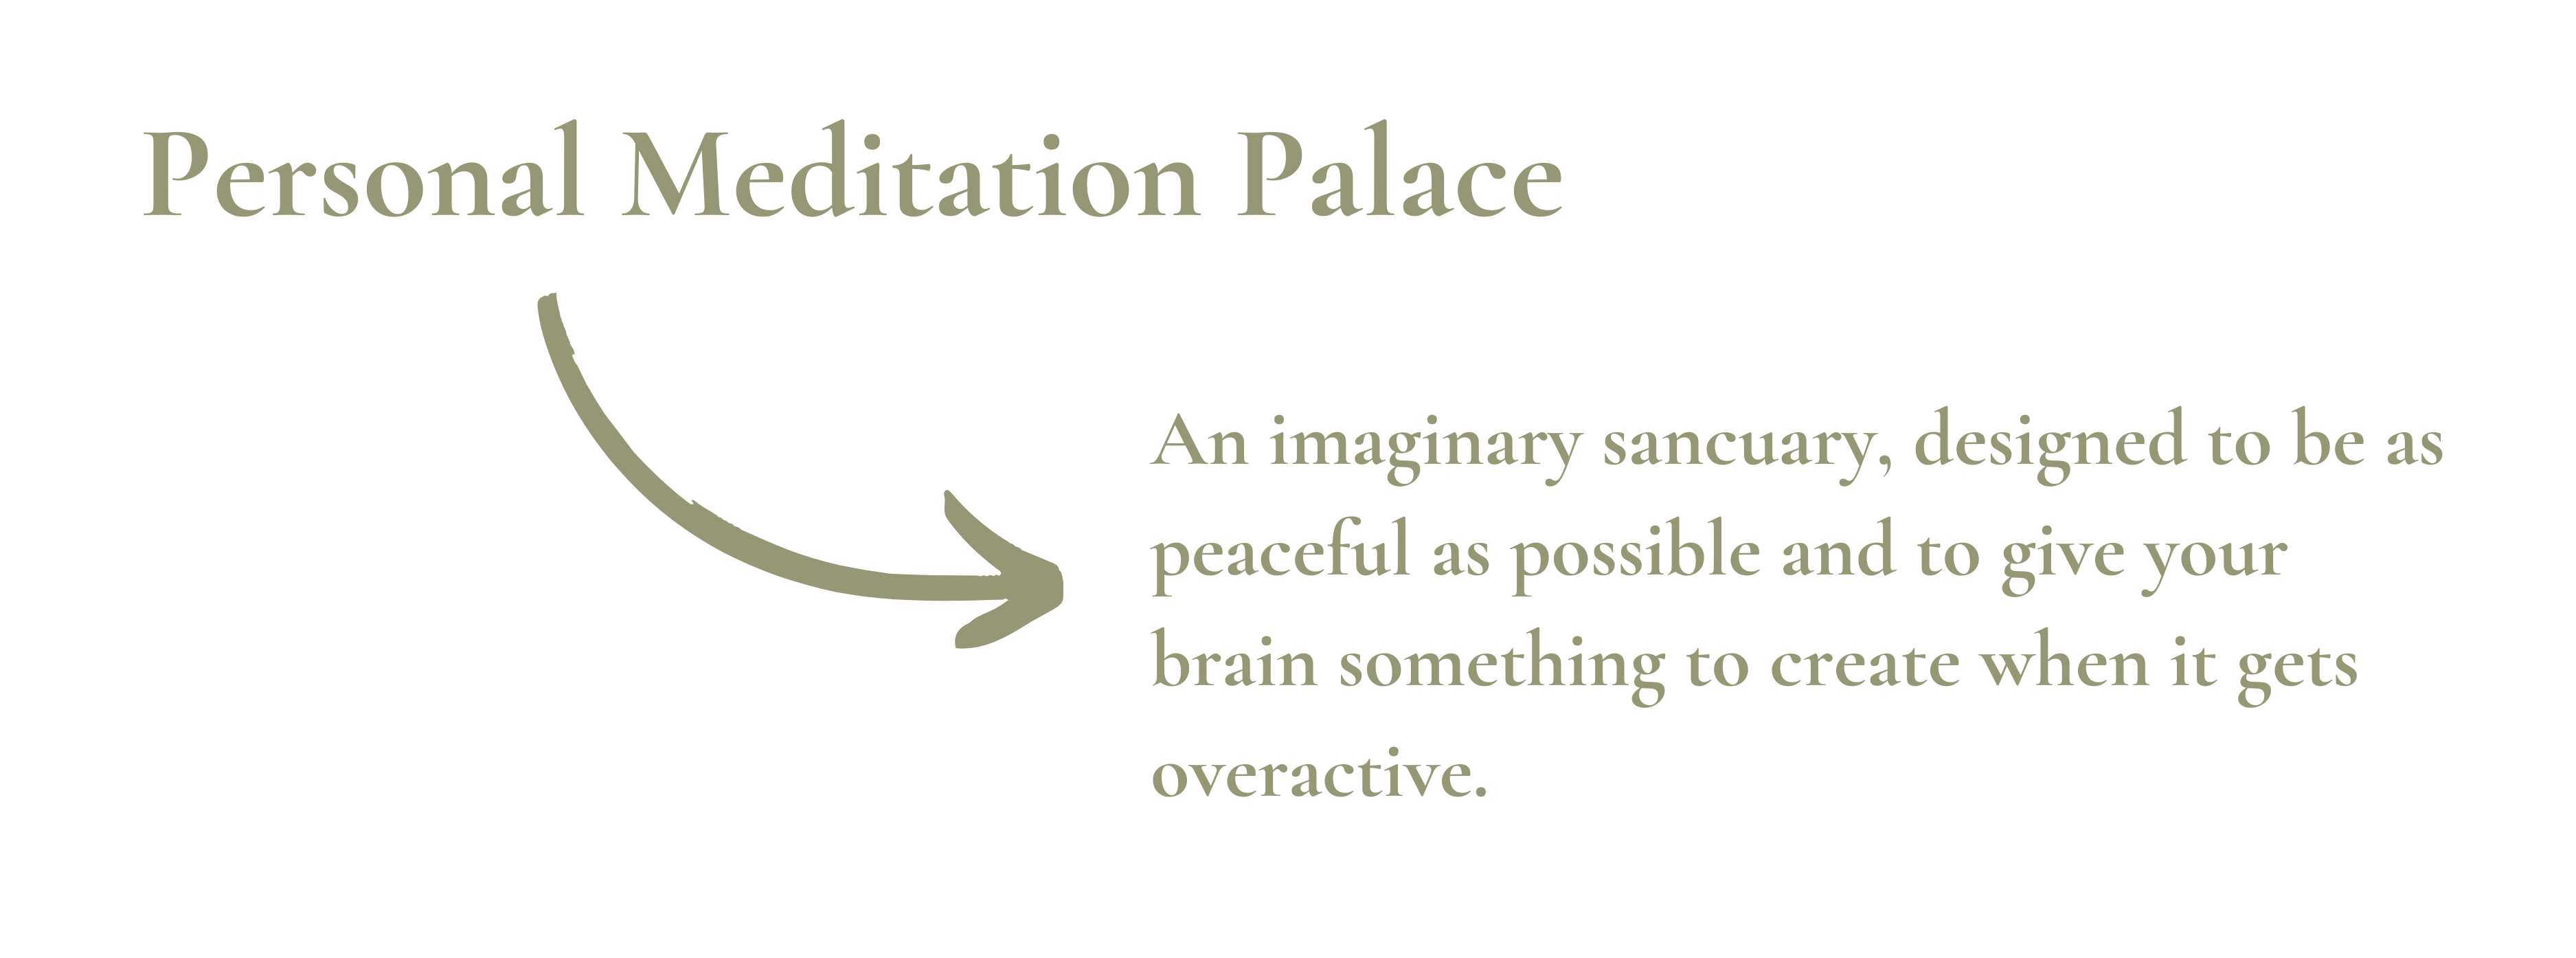 personal meditation palace